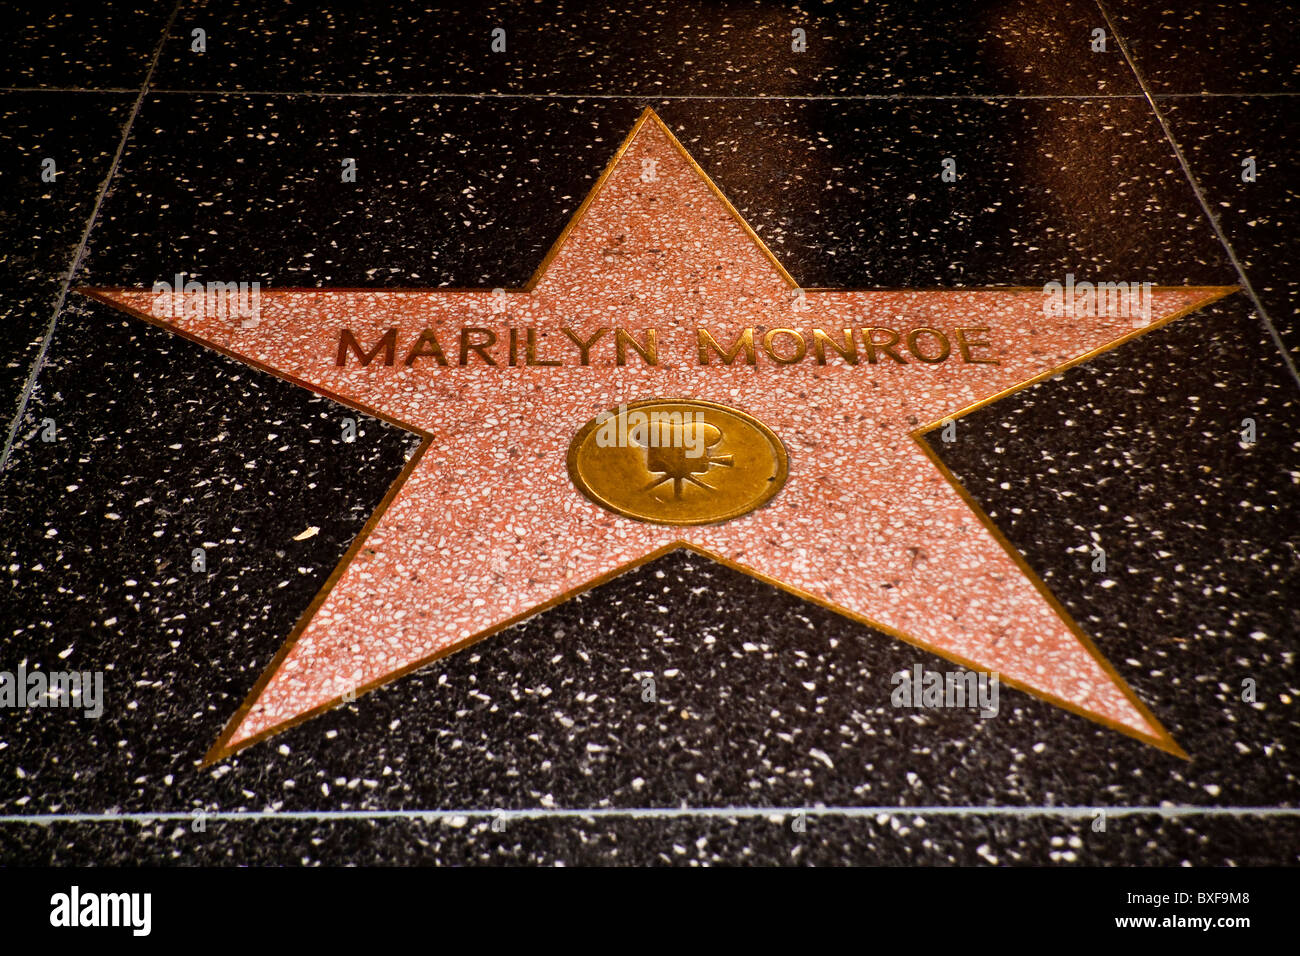 Paseo de la Fama de Hollywood la estrella de Marilyn Monroe Foto de stock